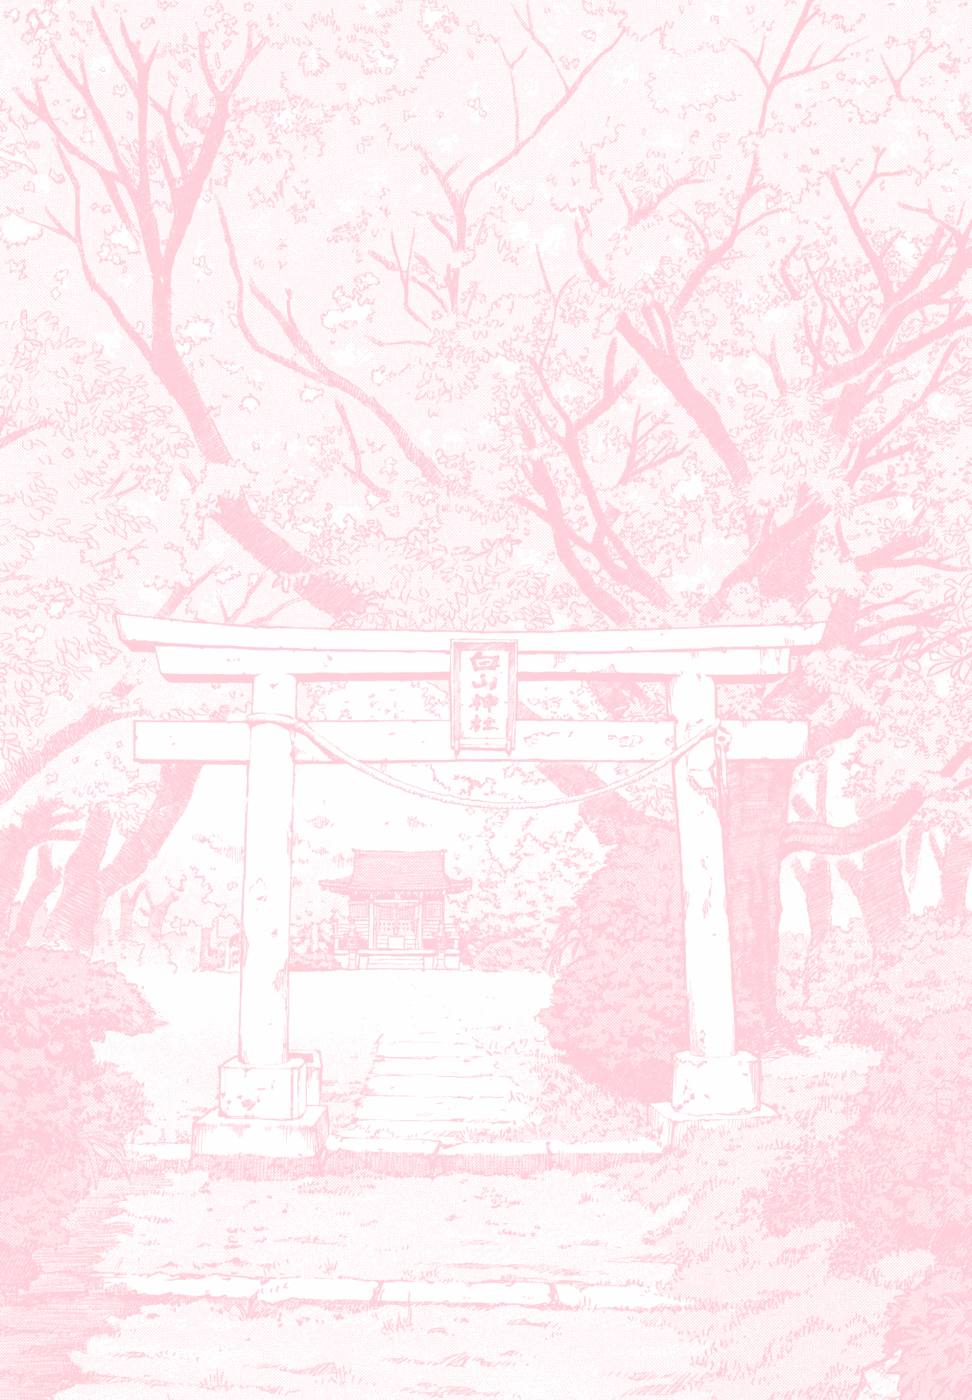 Anime Wallpaper Pastel Pink